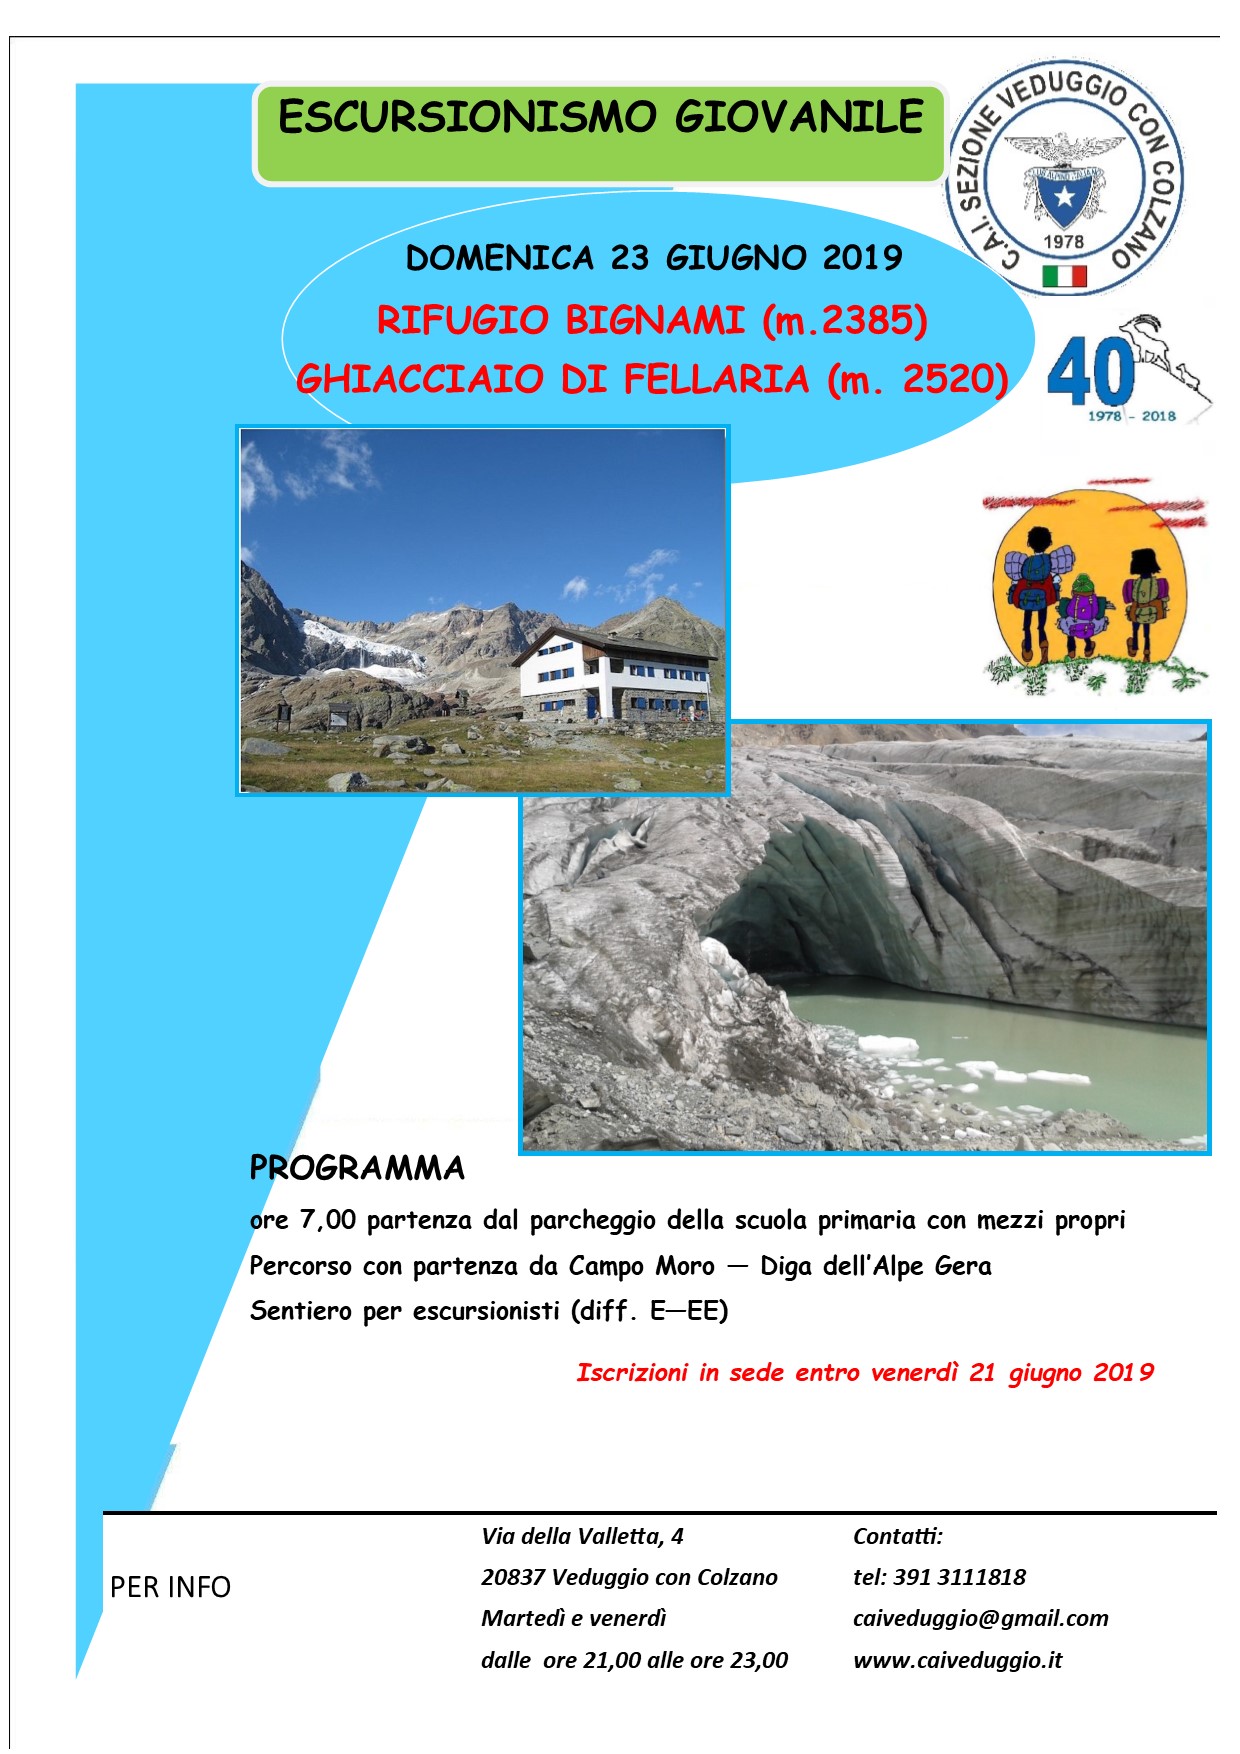 Domenica 23 giugno 2019 – Escursionismo giovanile – Rifugio Bignami – Ghiacciaio di Fellaria